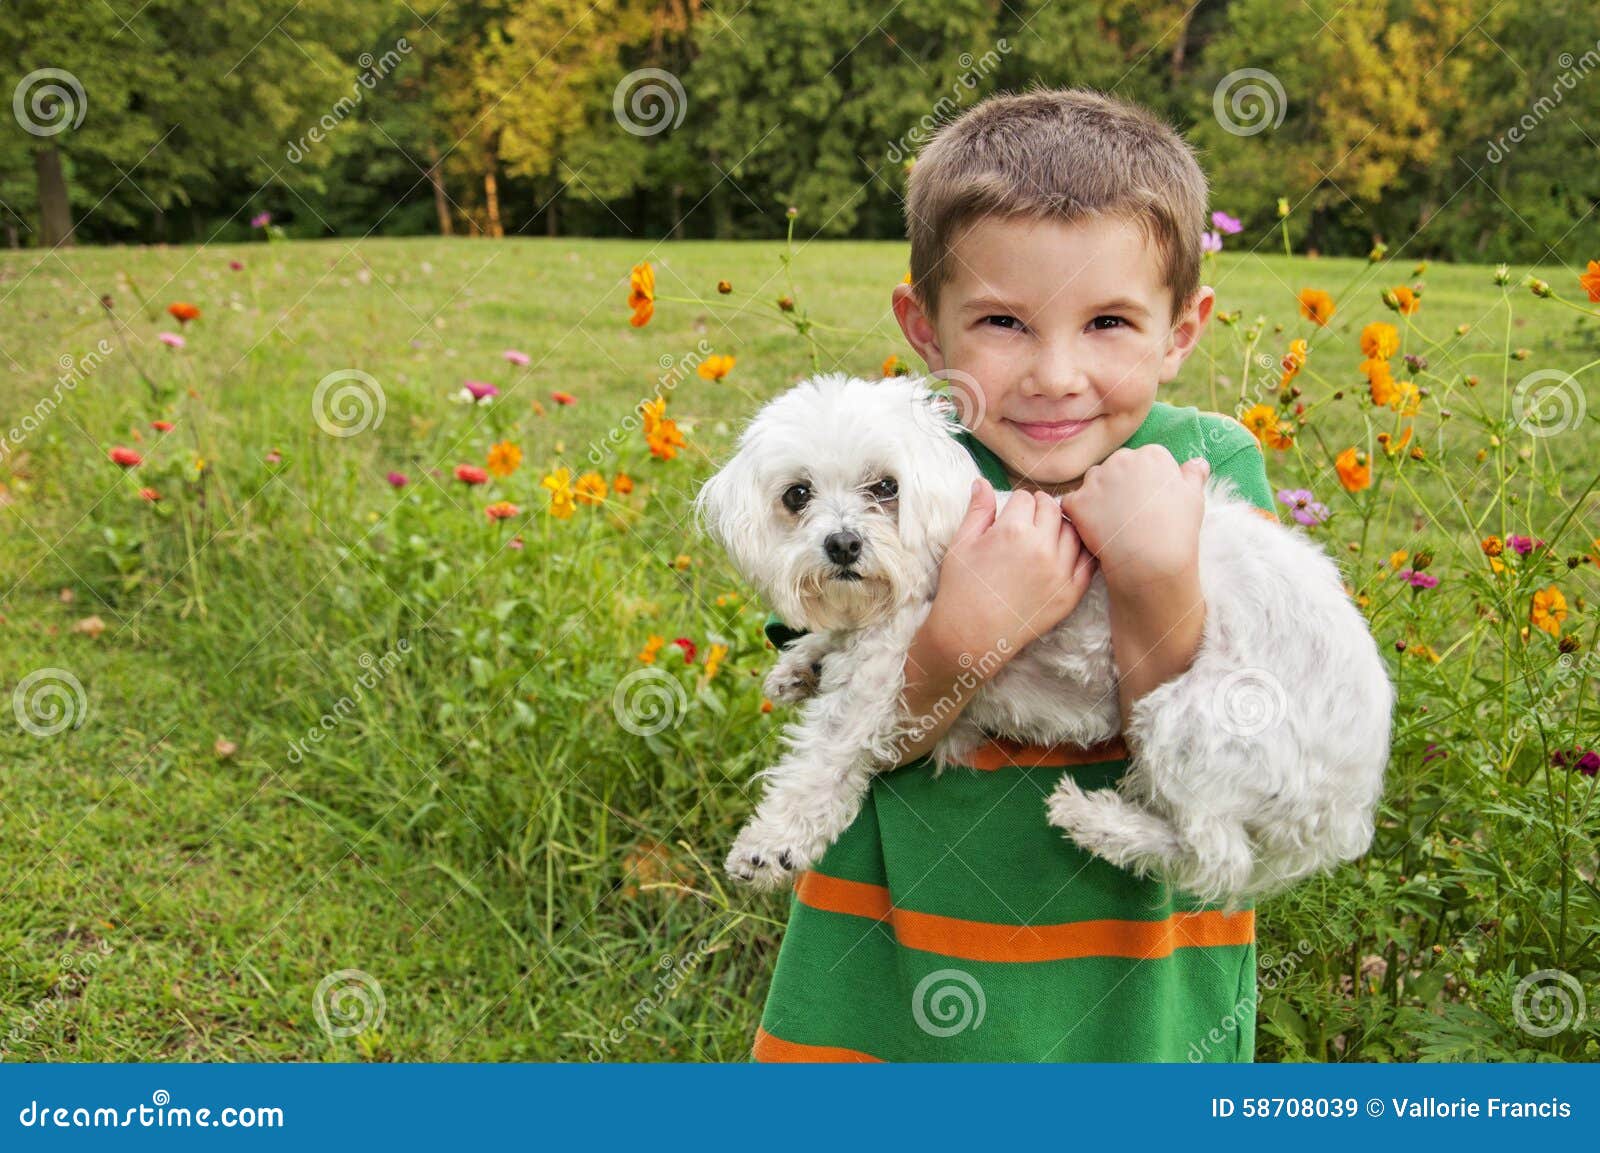 Мальчик держит собаку. Ребенок держит собаку. Мальчик держит щенка. Мальчик держит собаку на руках.